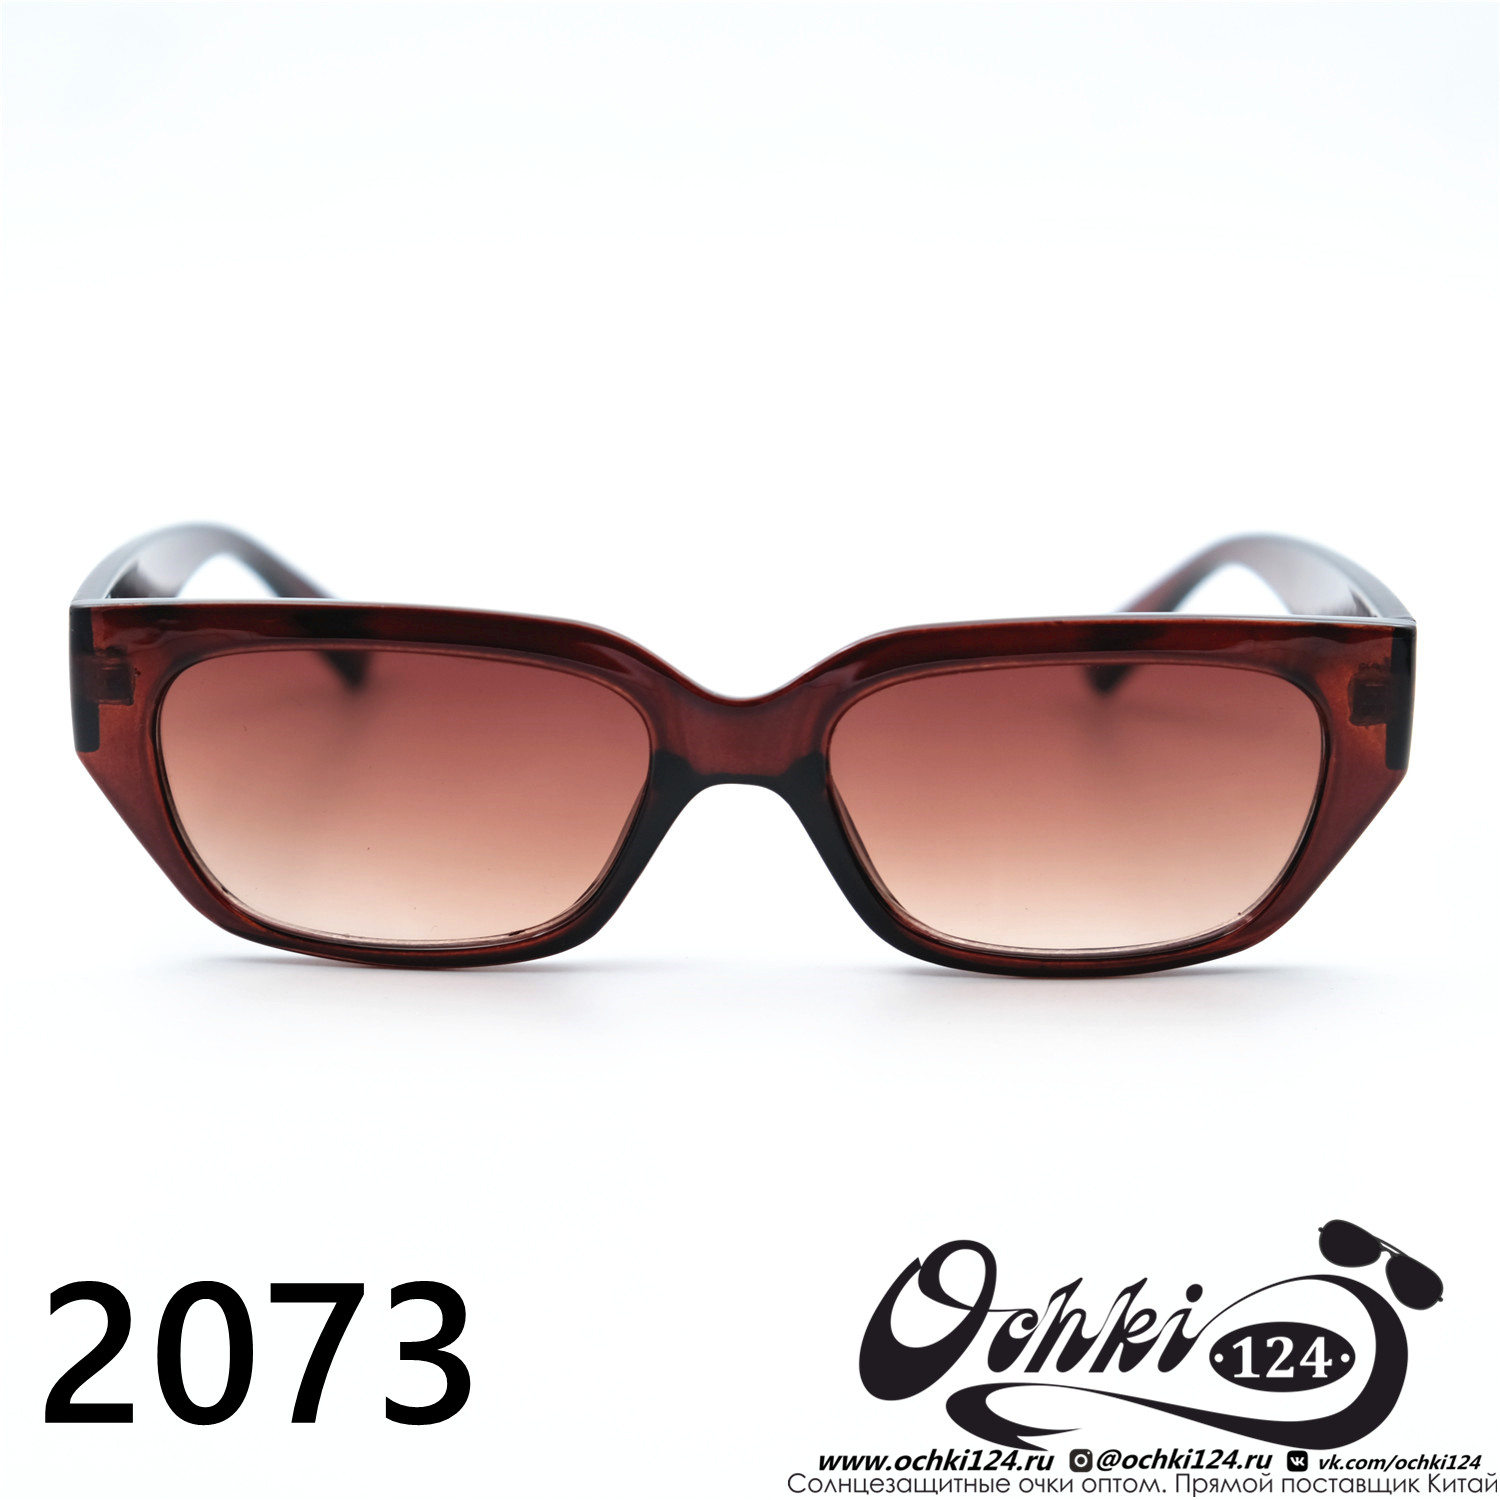  Солнцезащитные очки картинка 2023 Женские Узкие и длинные Barletta 2073-C6 